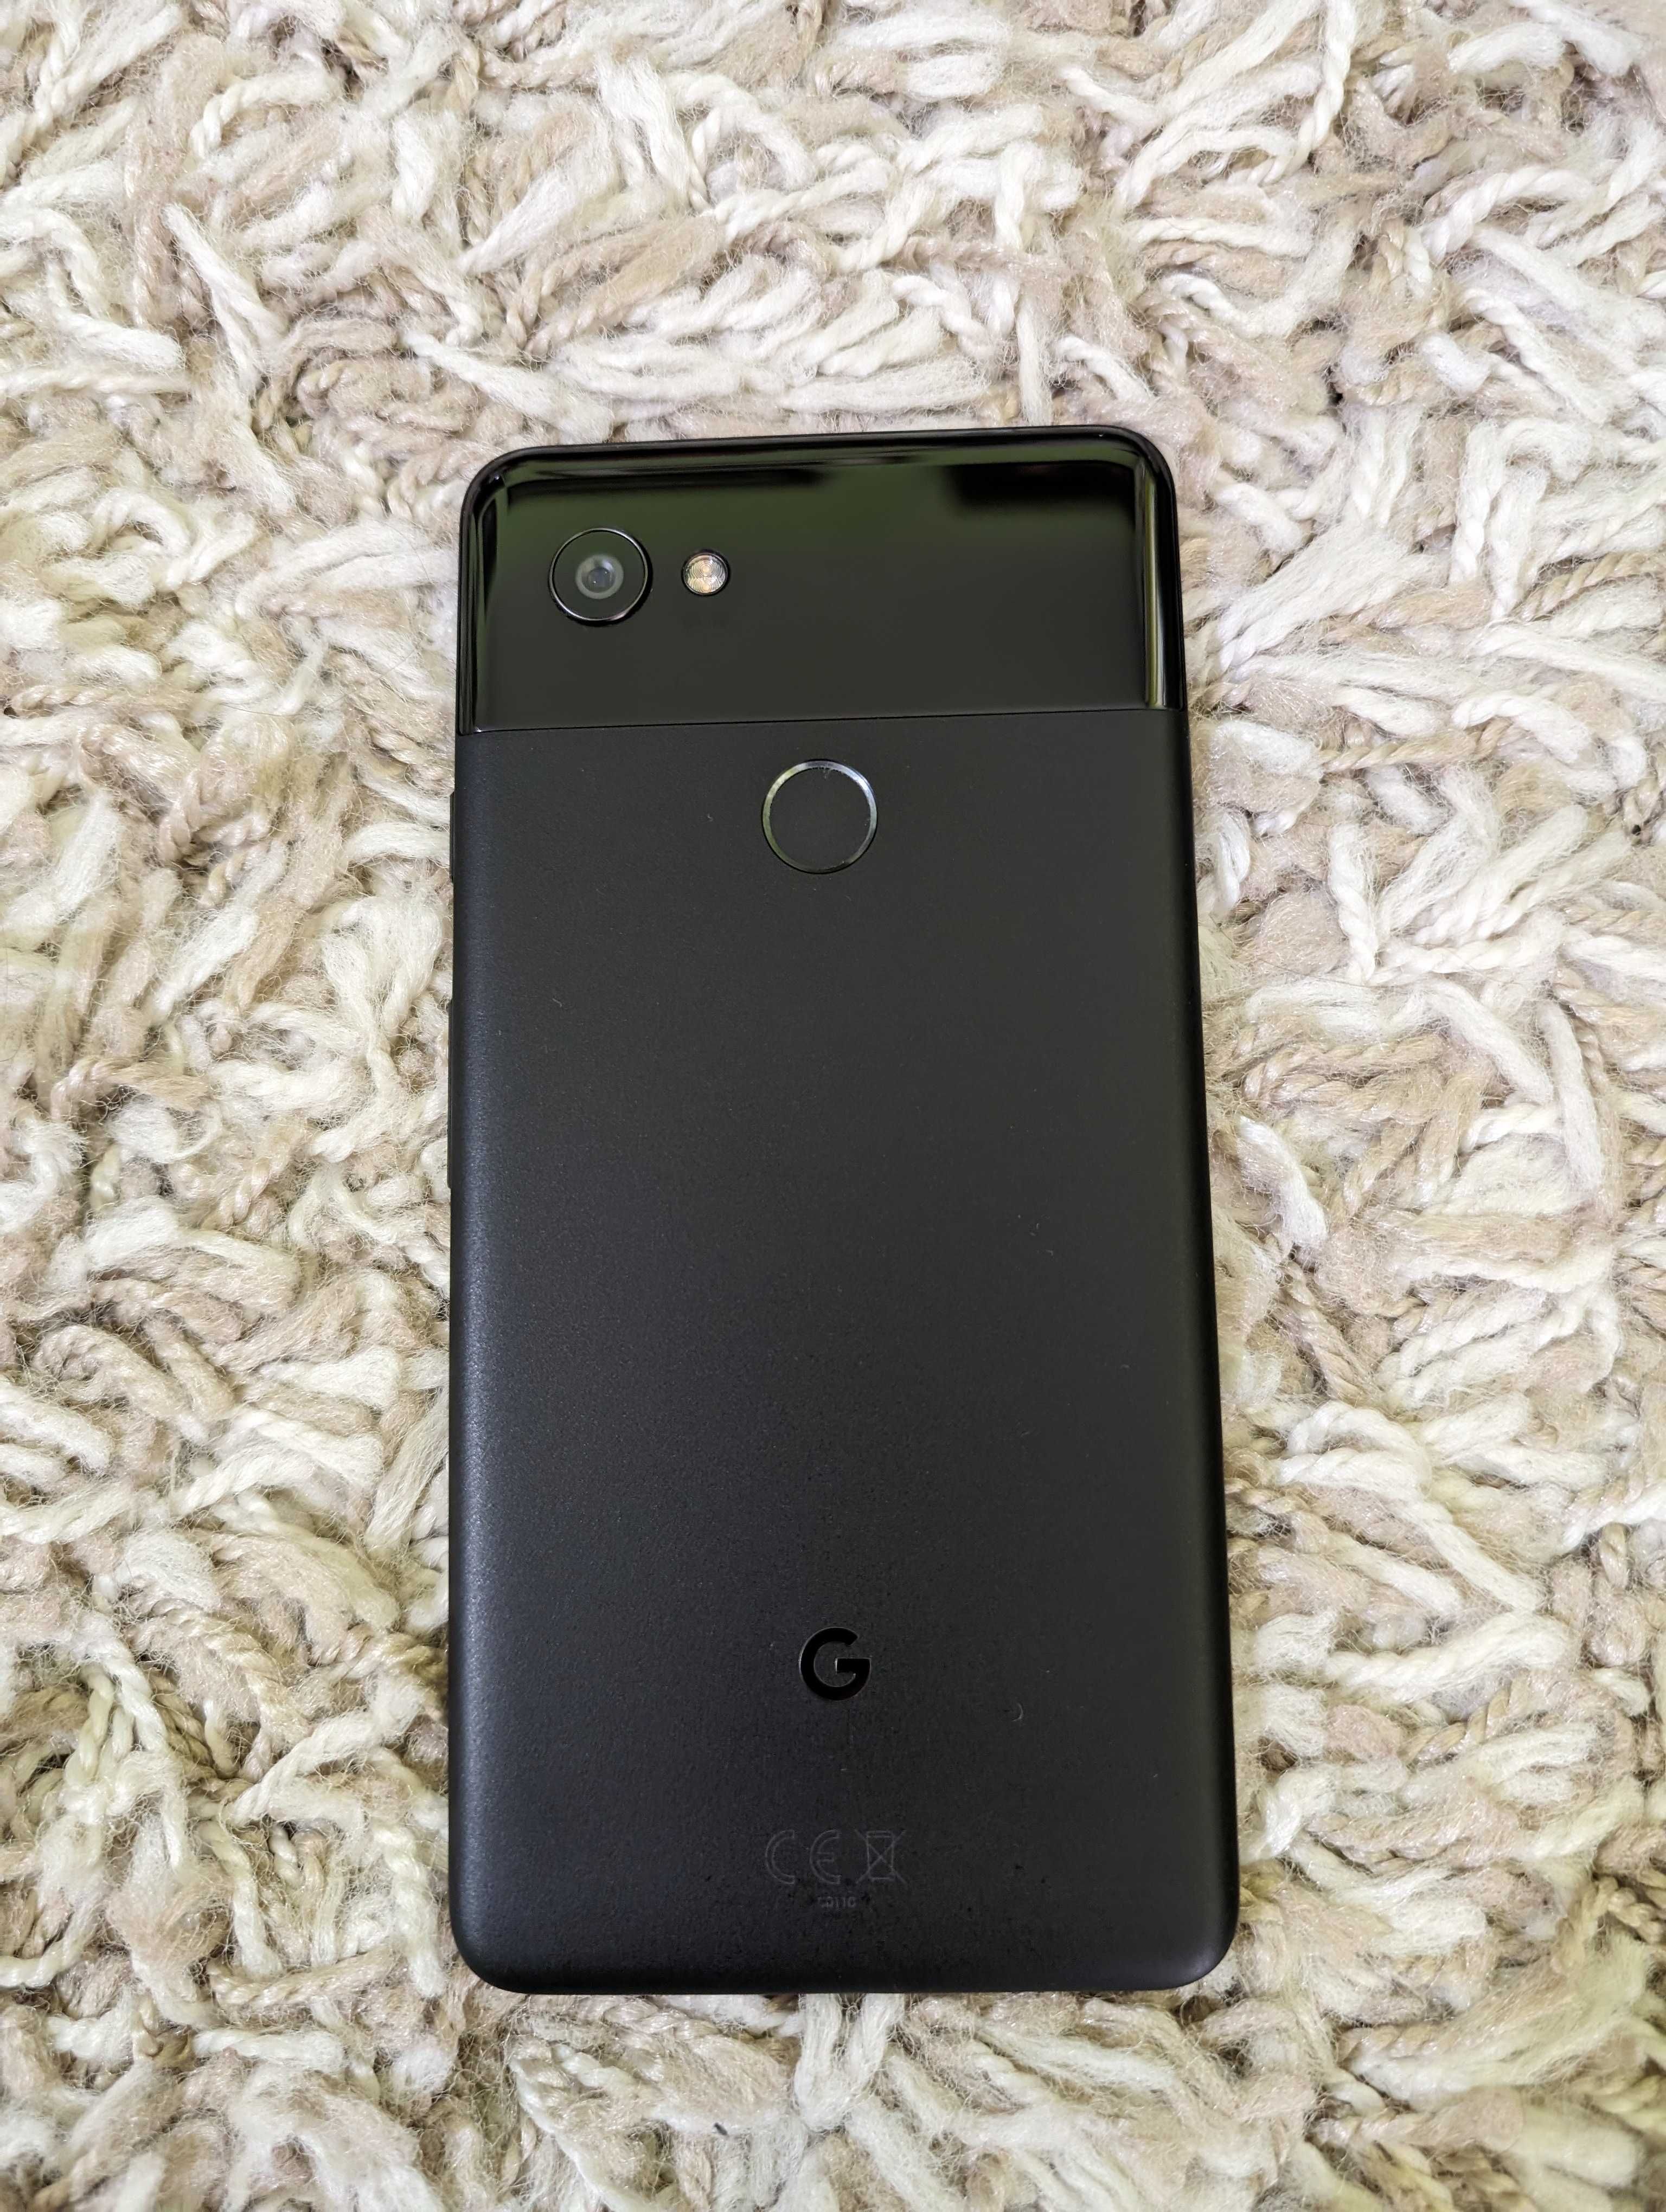 Vand smartphone Google Pixel 2XL in stare excelenta